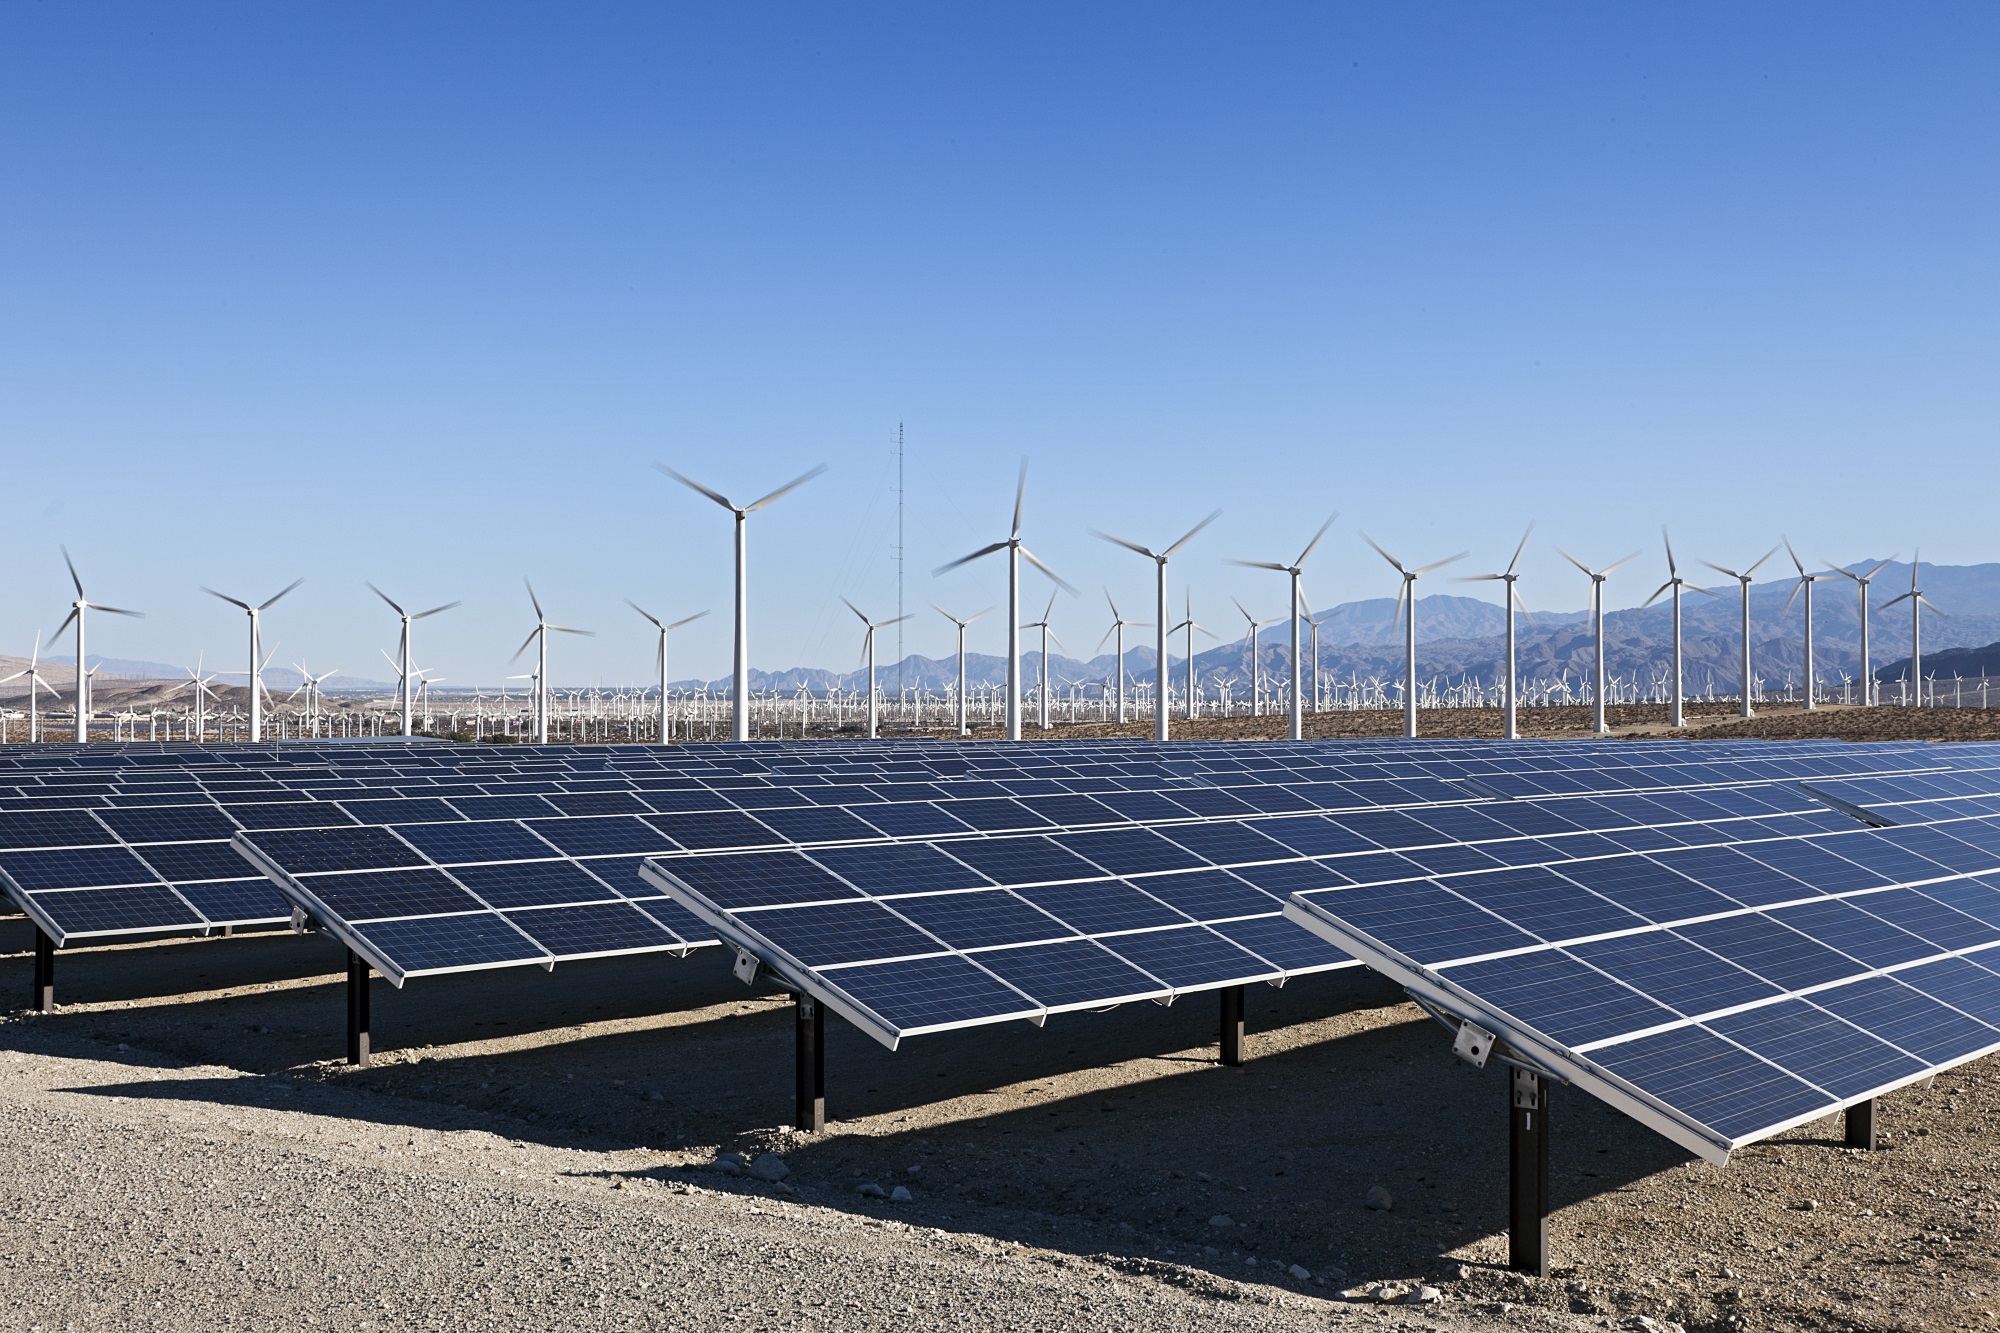 Elastyczność zmodernizowanych bloków 200 MW ma być istotnym wsparciem dla odnawialnych źródeł energii (fot. Shutterstock)